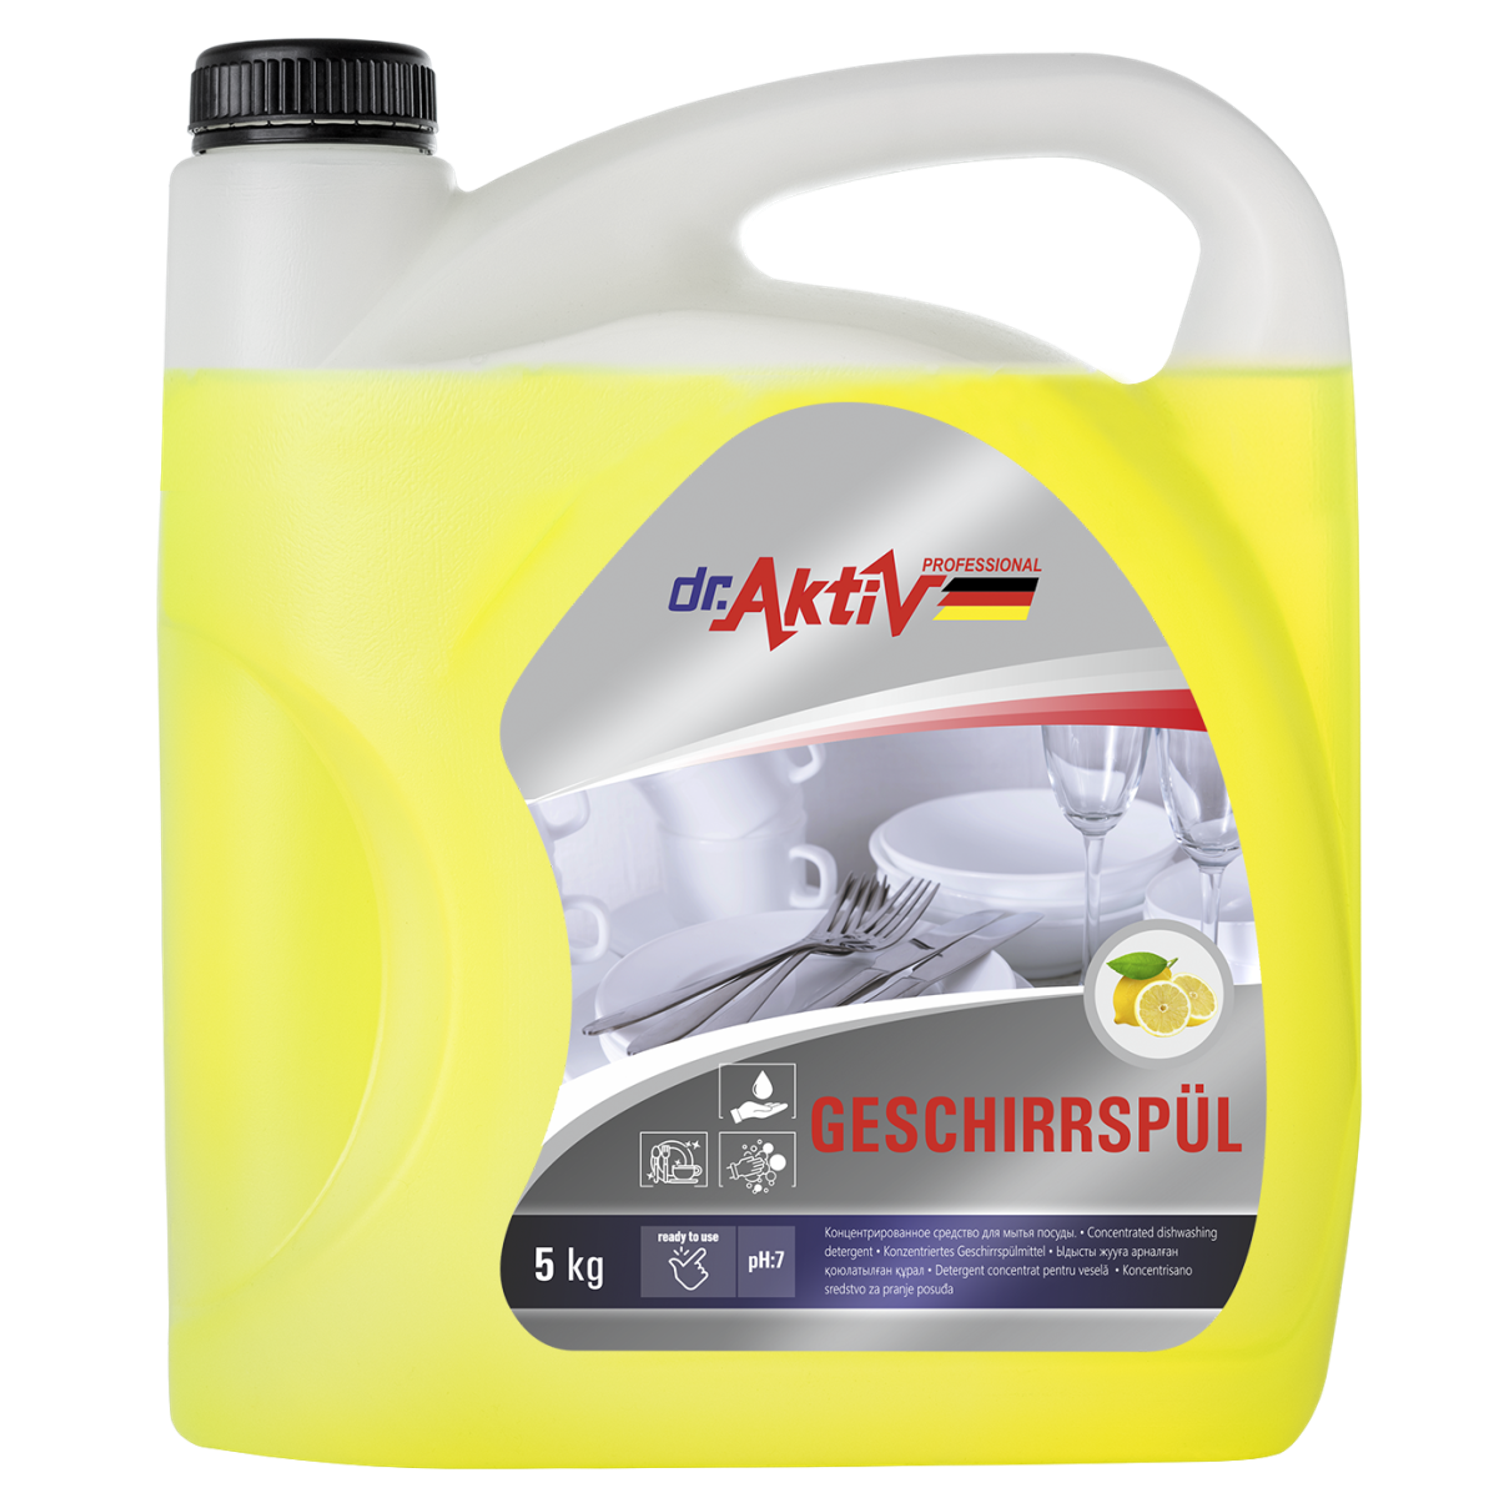 Cредство для мытья посуды Dr.Aktiv Professional Geschirrspül c ароматом лимона 5 кг - фото 1